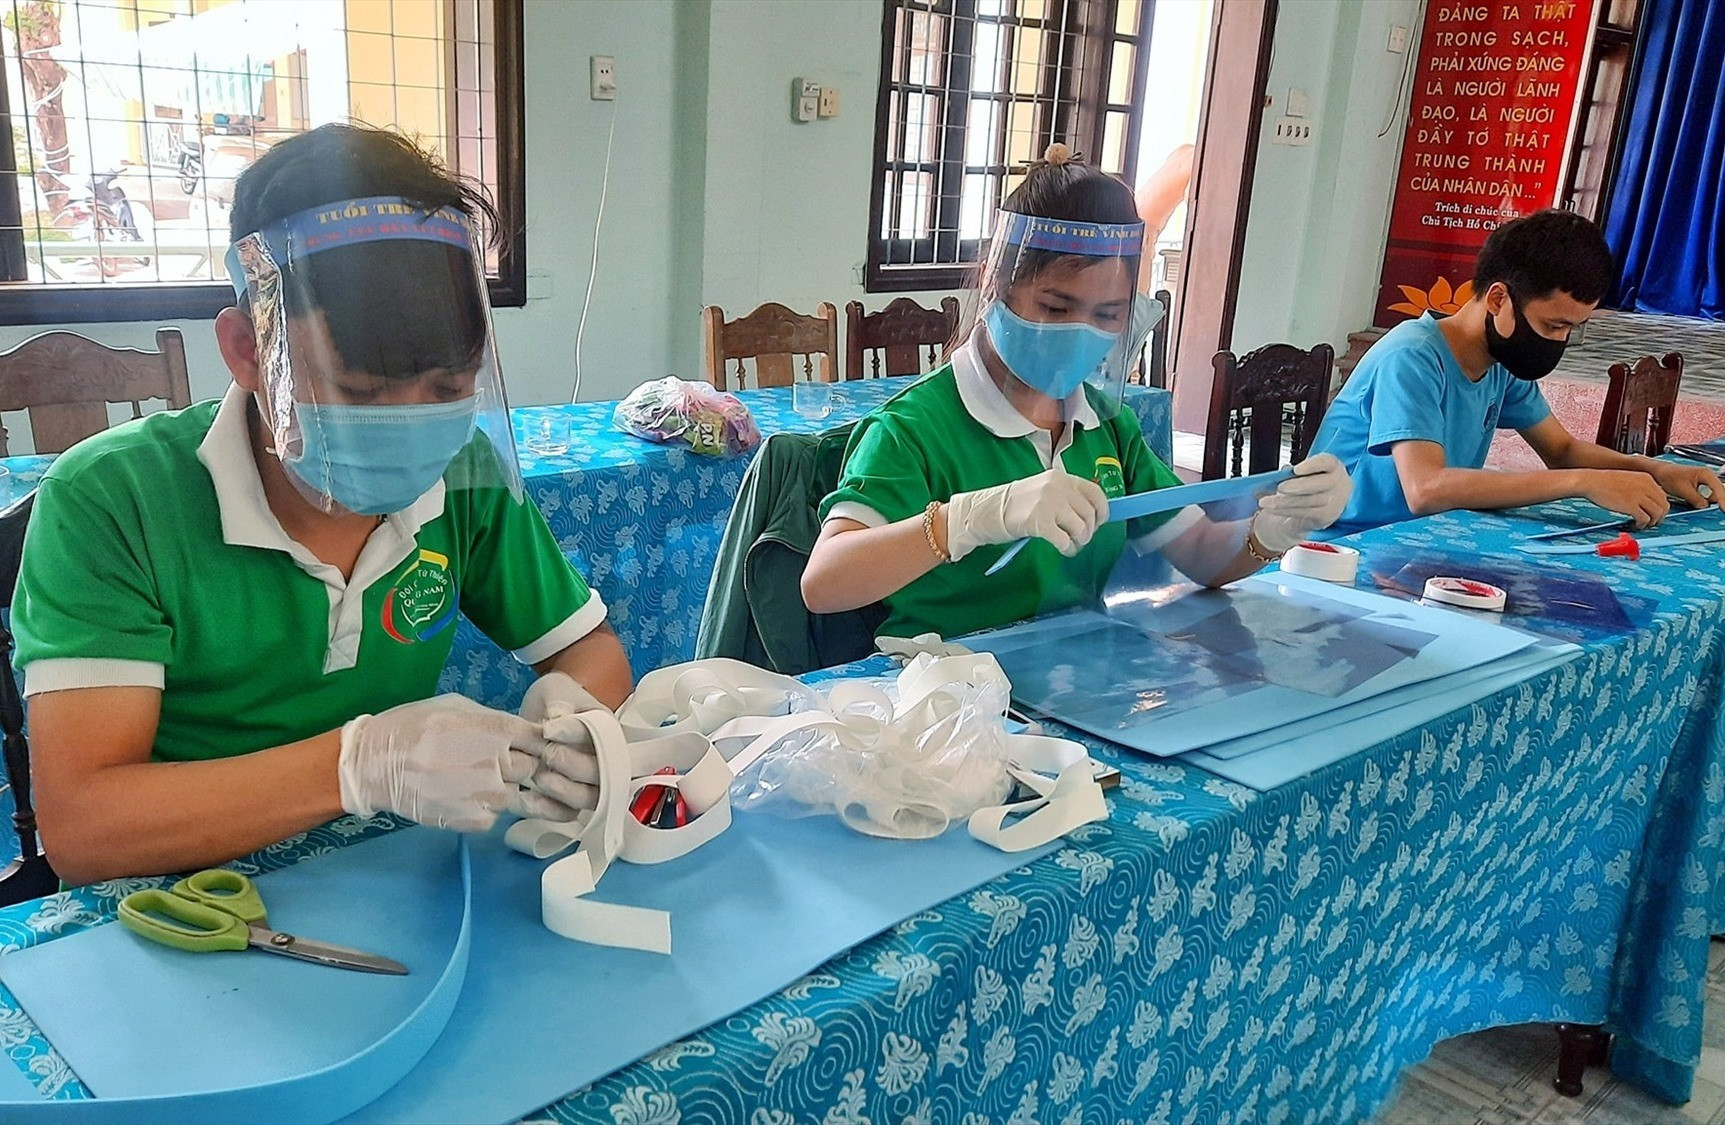 Đoàn phường Vĩnh Điện làm nón bảo hộ chống dịch bệnh cho tiểu thương.